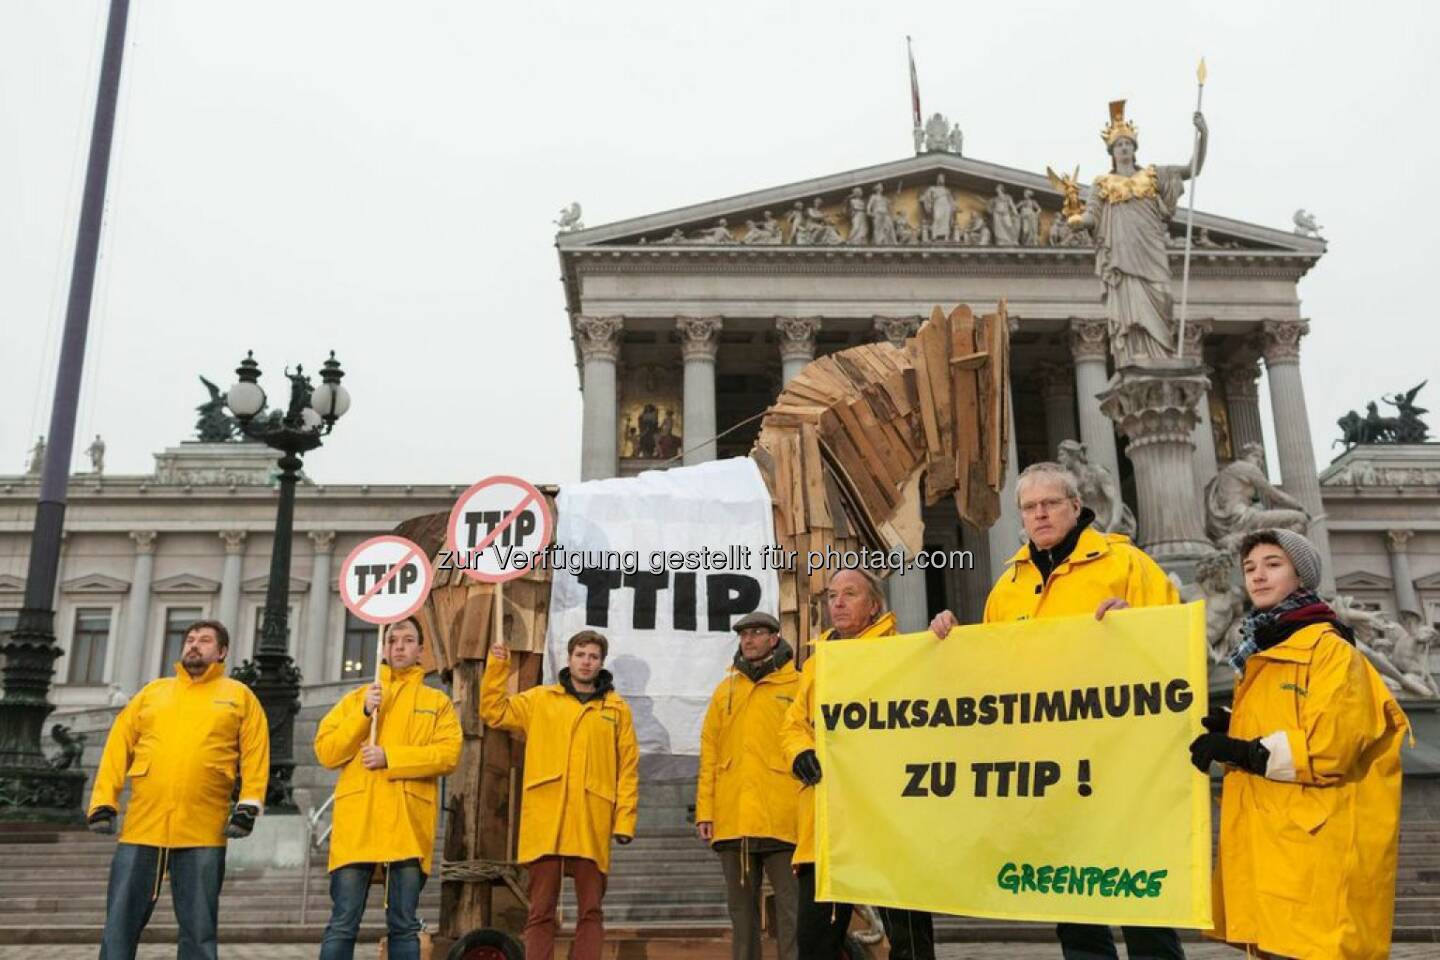 Anlässlich des heutigen Besuchs von EU-Kommissarin Cecilia Malmström bekräftigt die Umweltorganisation Greenpeace die Kritik an den geplanten Handelsabkommen zwischen der EU und den USA (TTIP), Kanada (CETA) und Singapur (EUSFTA). Mit einem vier Meter hohen hölzernen Trojanischen Pferd protestieren die Umweltschützer vor dem Parlament und fordern eine Volksabstimmung zu umstrittenen Handelsabkommen wie TTIP und CETA in Österreich.